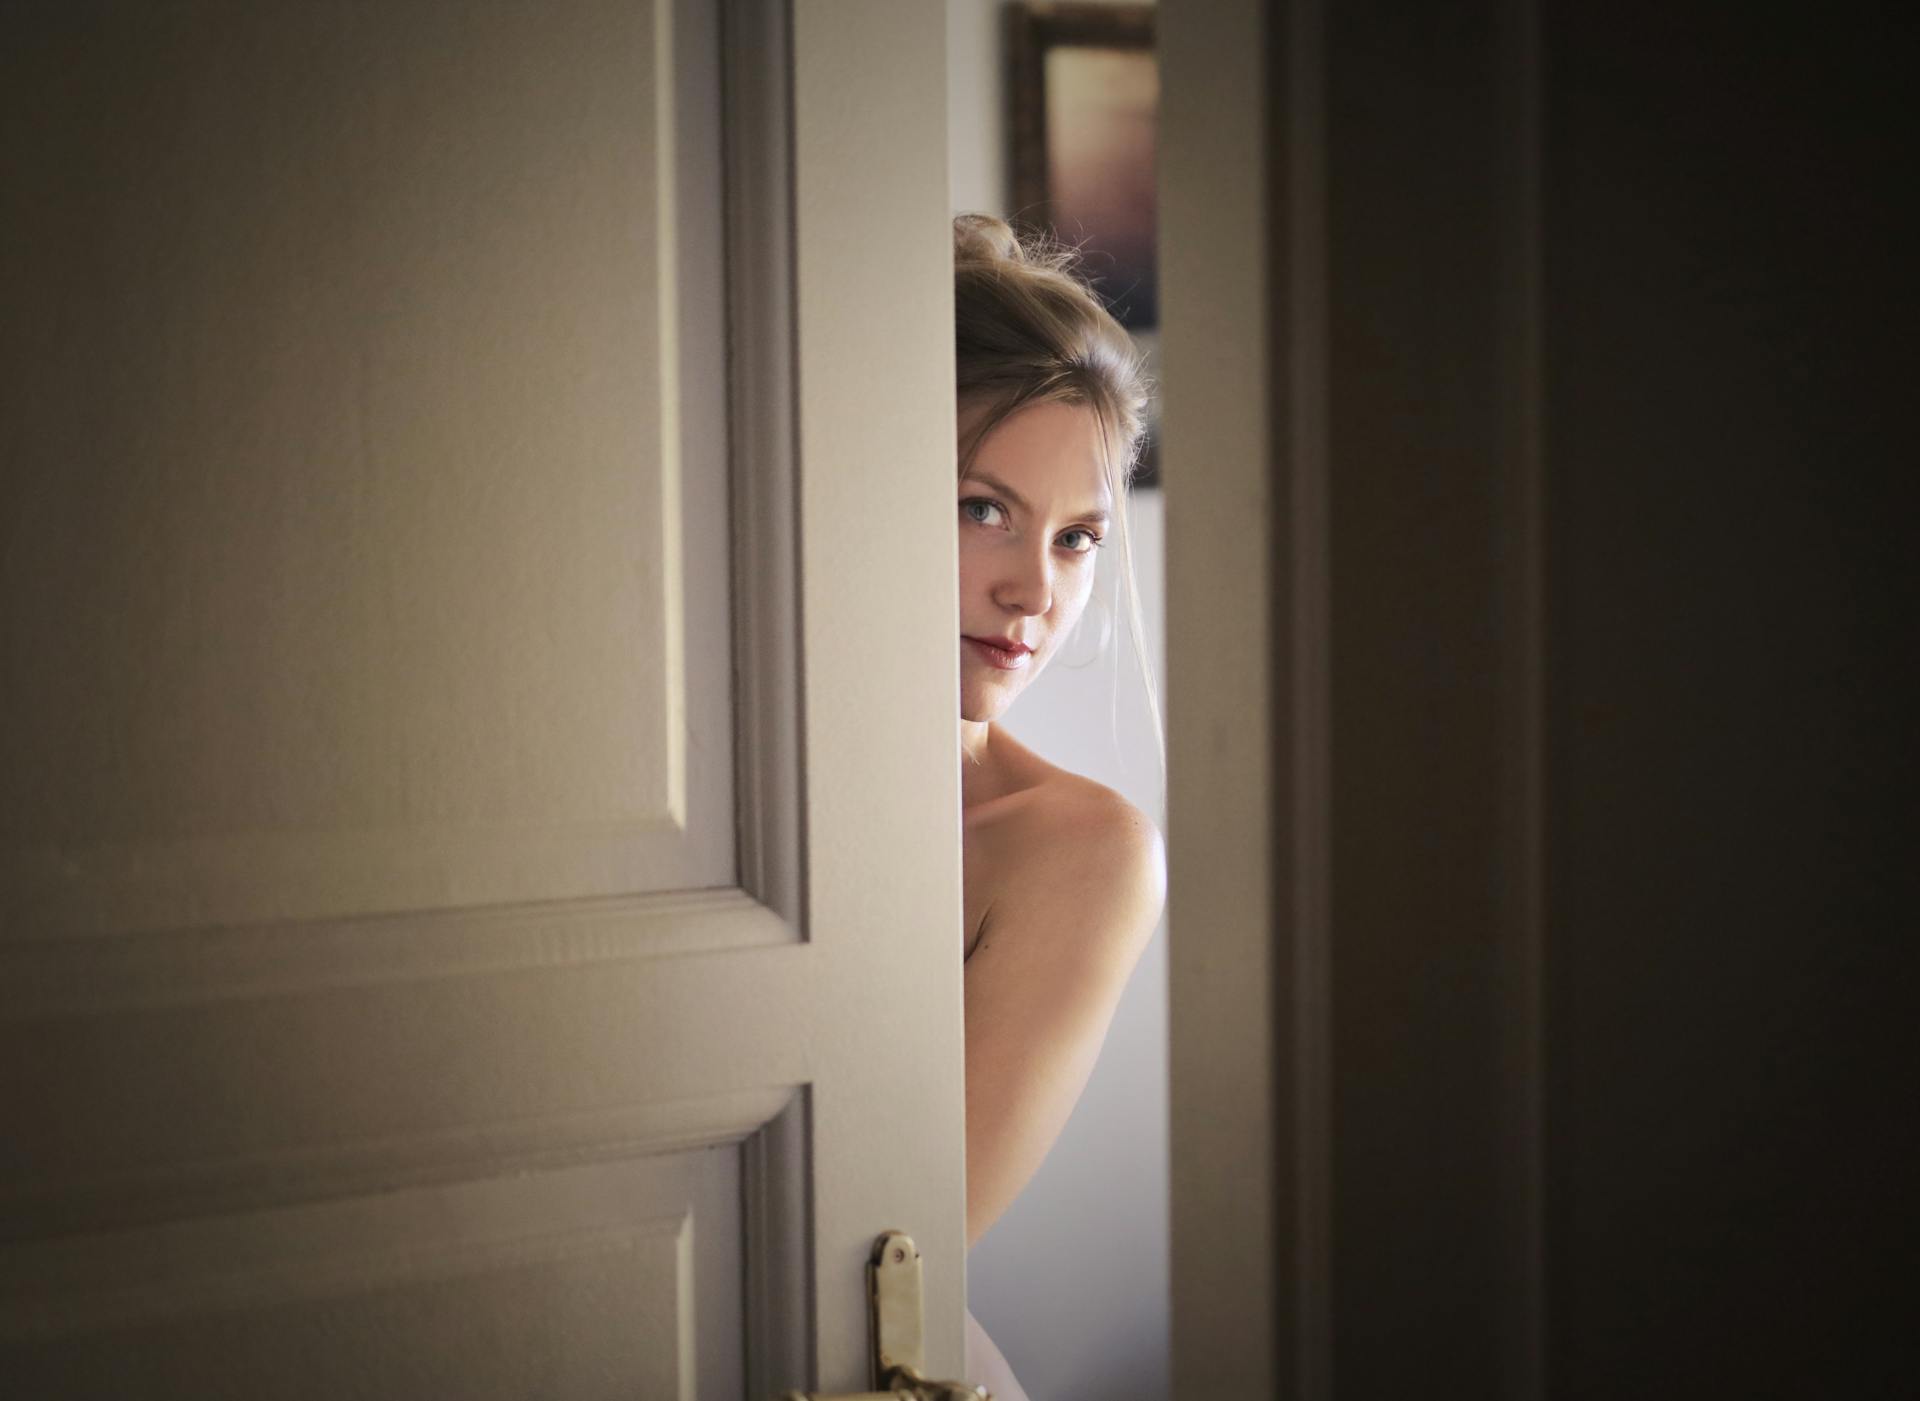 Eine Frau späht um eine Tür herum | Quelle: Pexels